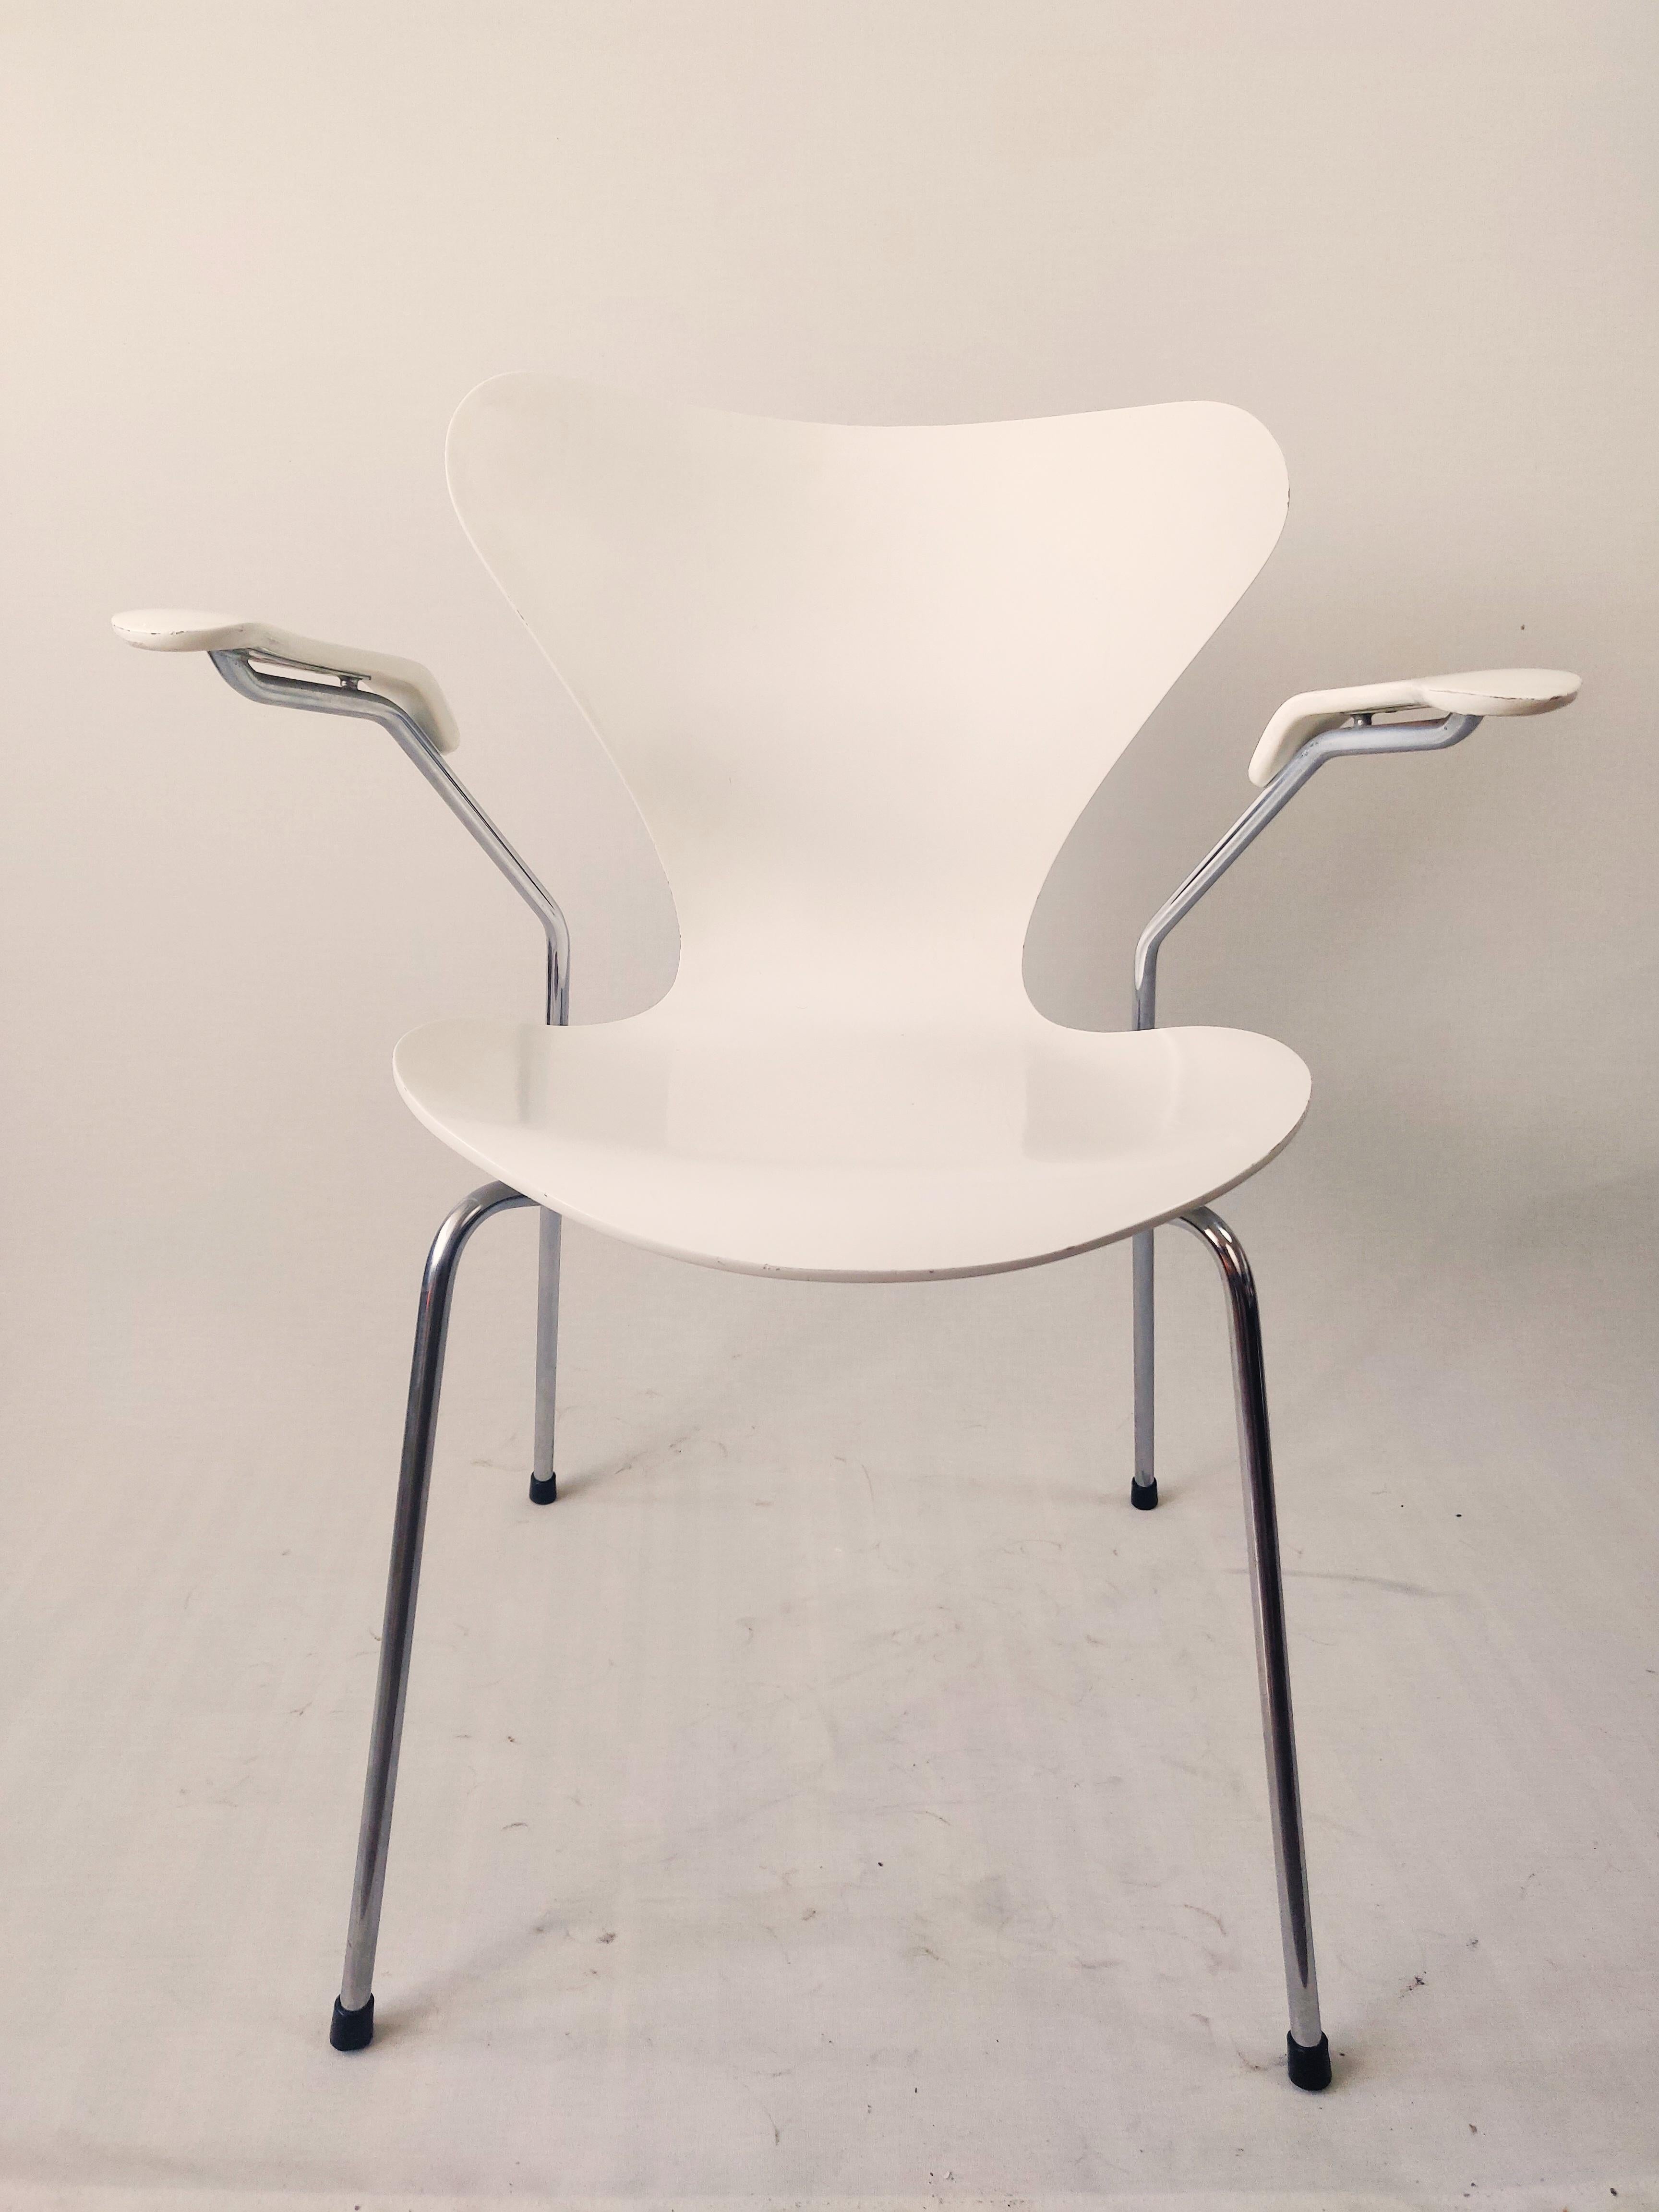 Der von Arne Jacobsen entworfene Serie 7 ist einer der ikonischsten Stühle in der Geschichte von Fritz Hansen und vielleicht auch in der Möbelgeschichte. Der druckgeformte Furnierstuhl ist eine Weiterentwicklung des klassischen Ant-Stuhls.
Der Stuhl